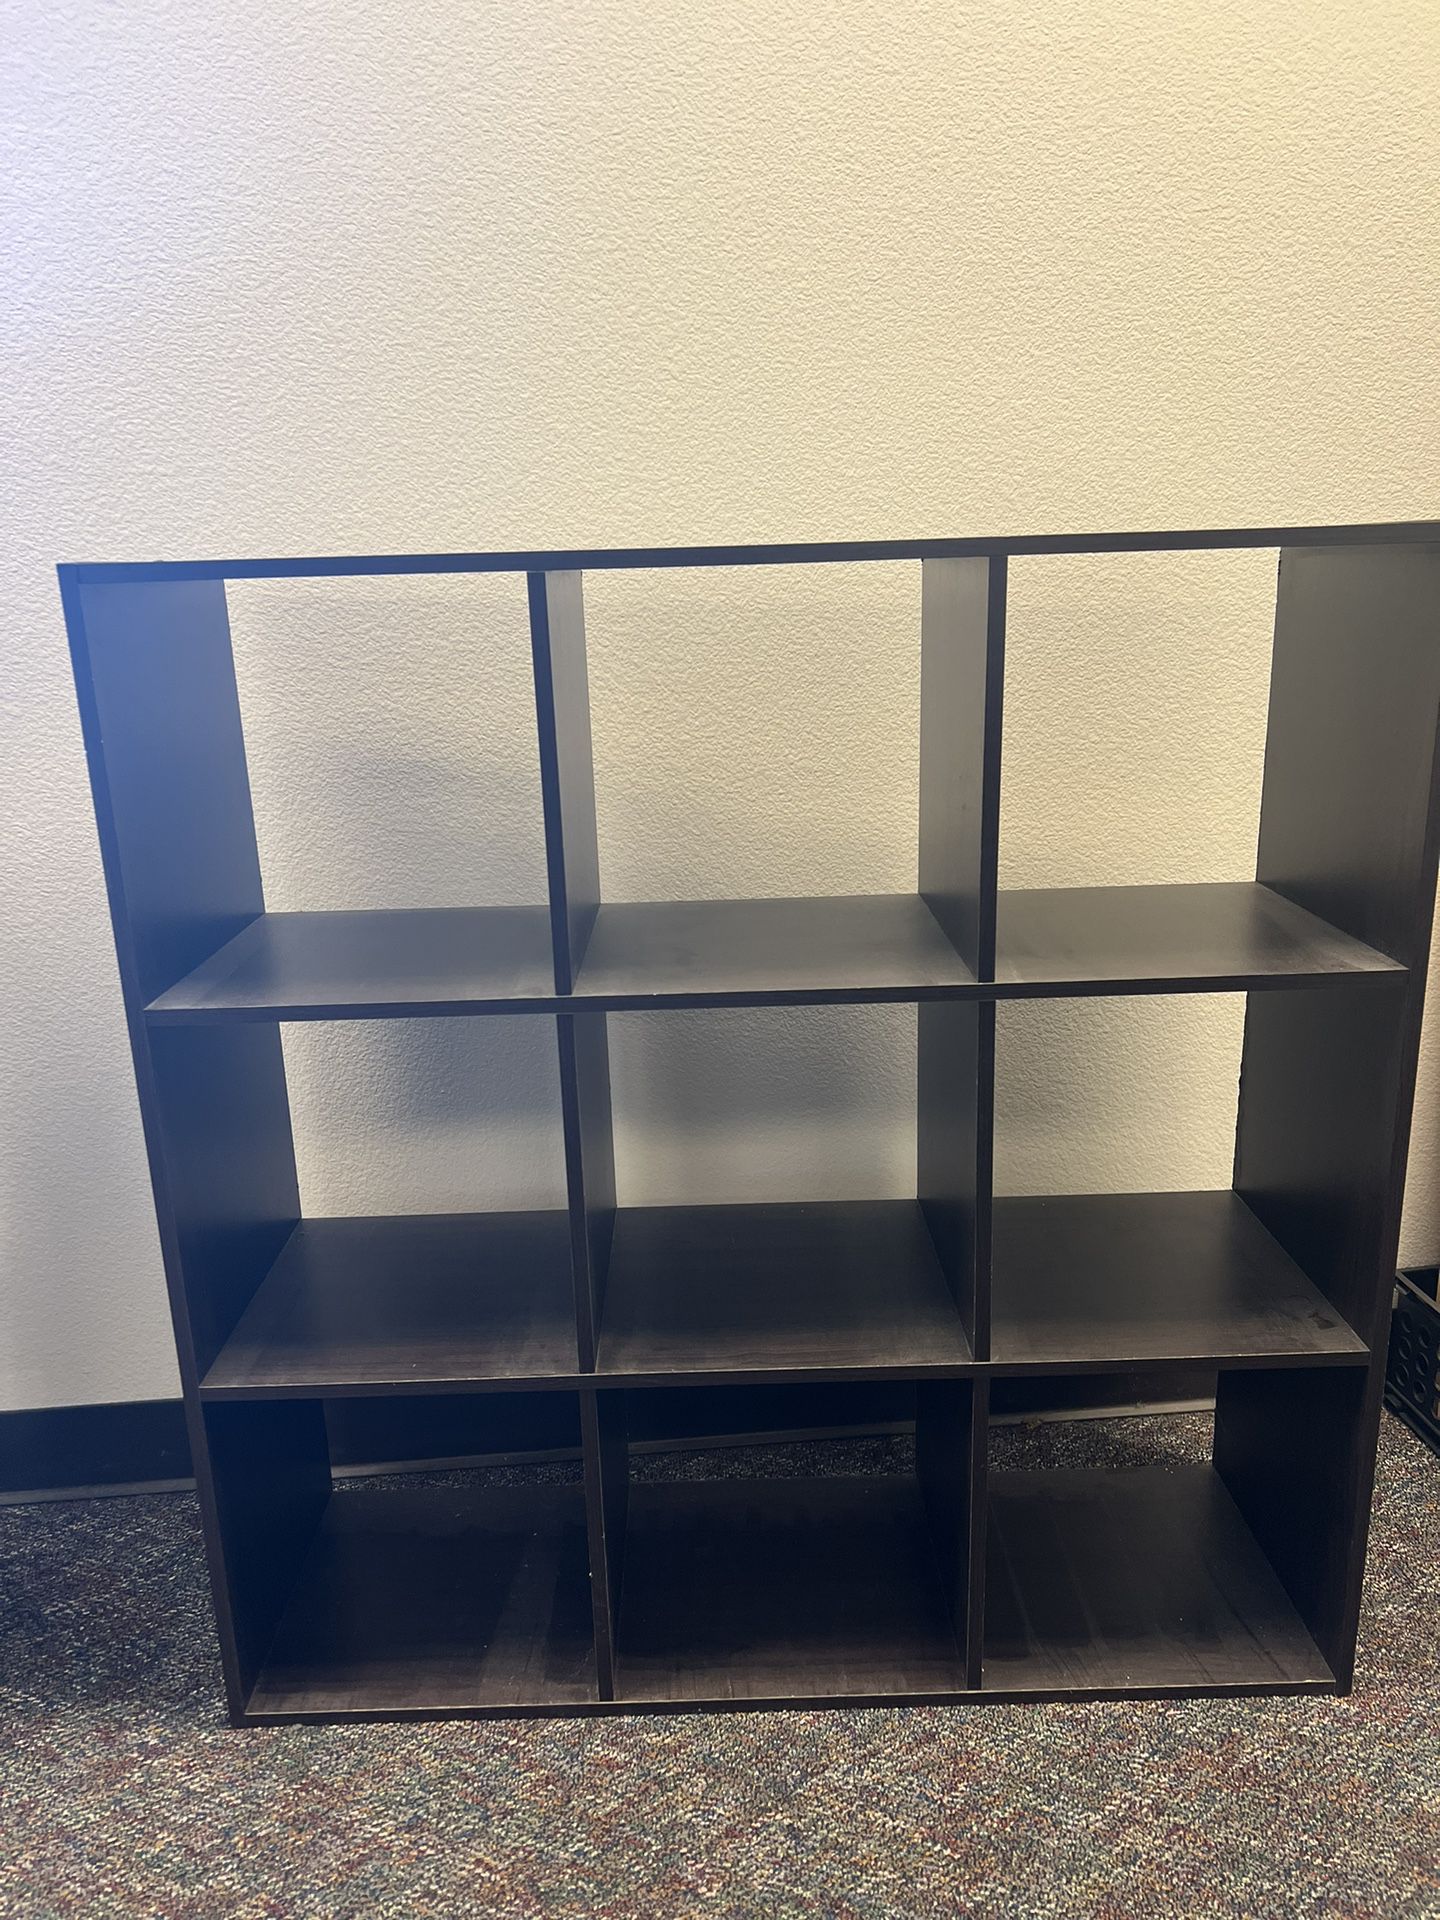 3x3 Cube Organizer Shelf 